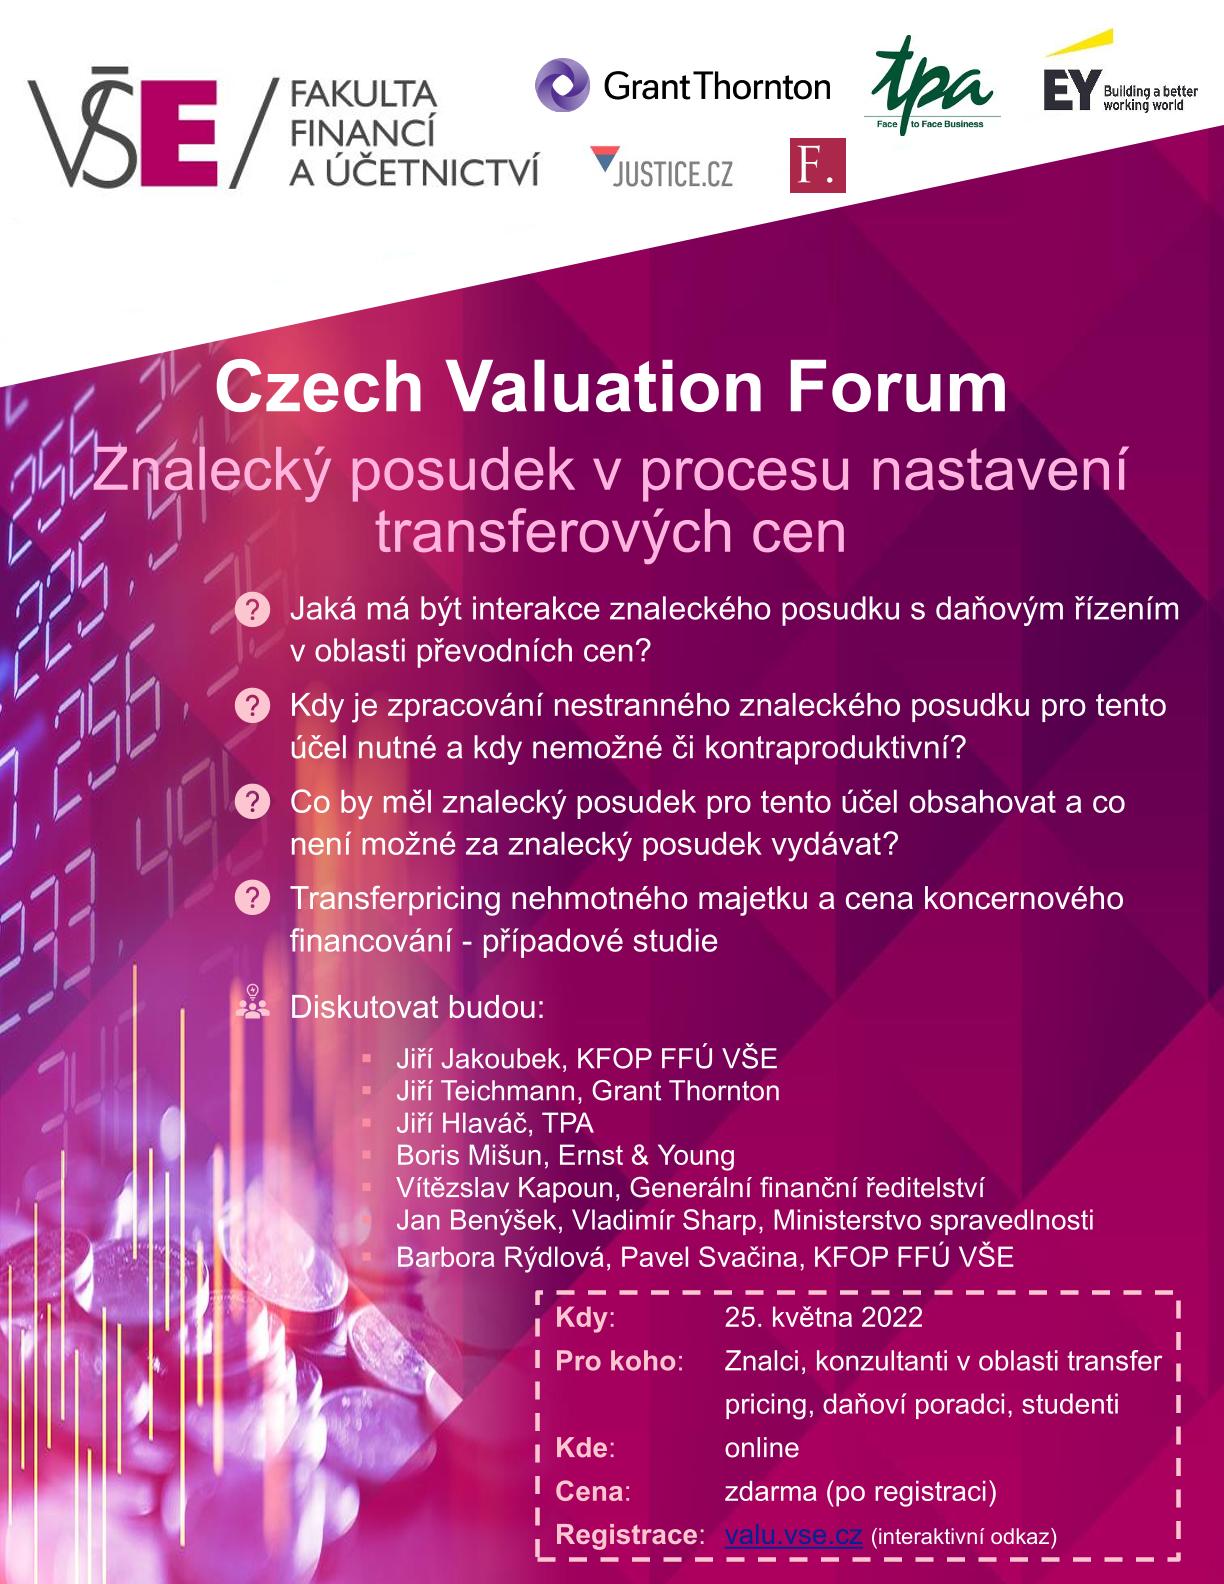 Konference Znalecký posudek v procesu nastavení transferových cen (Czech Valuation Forum)